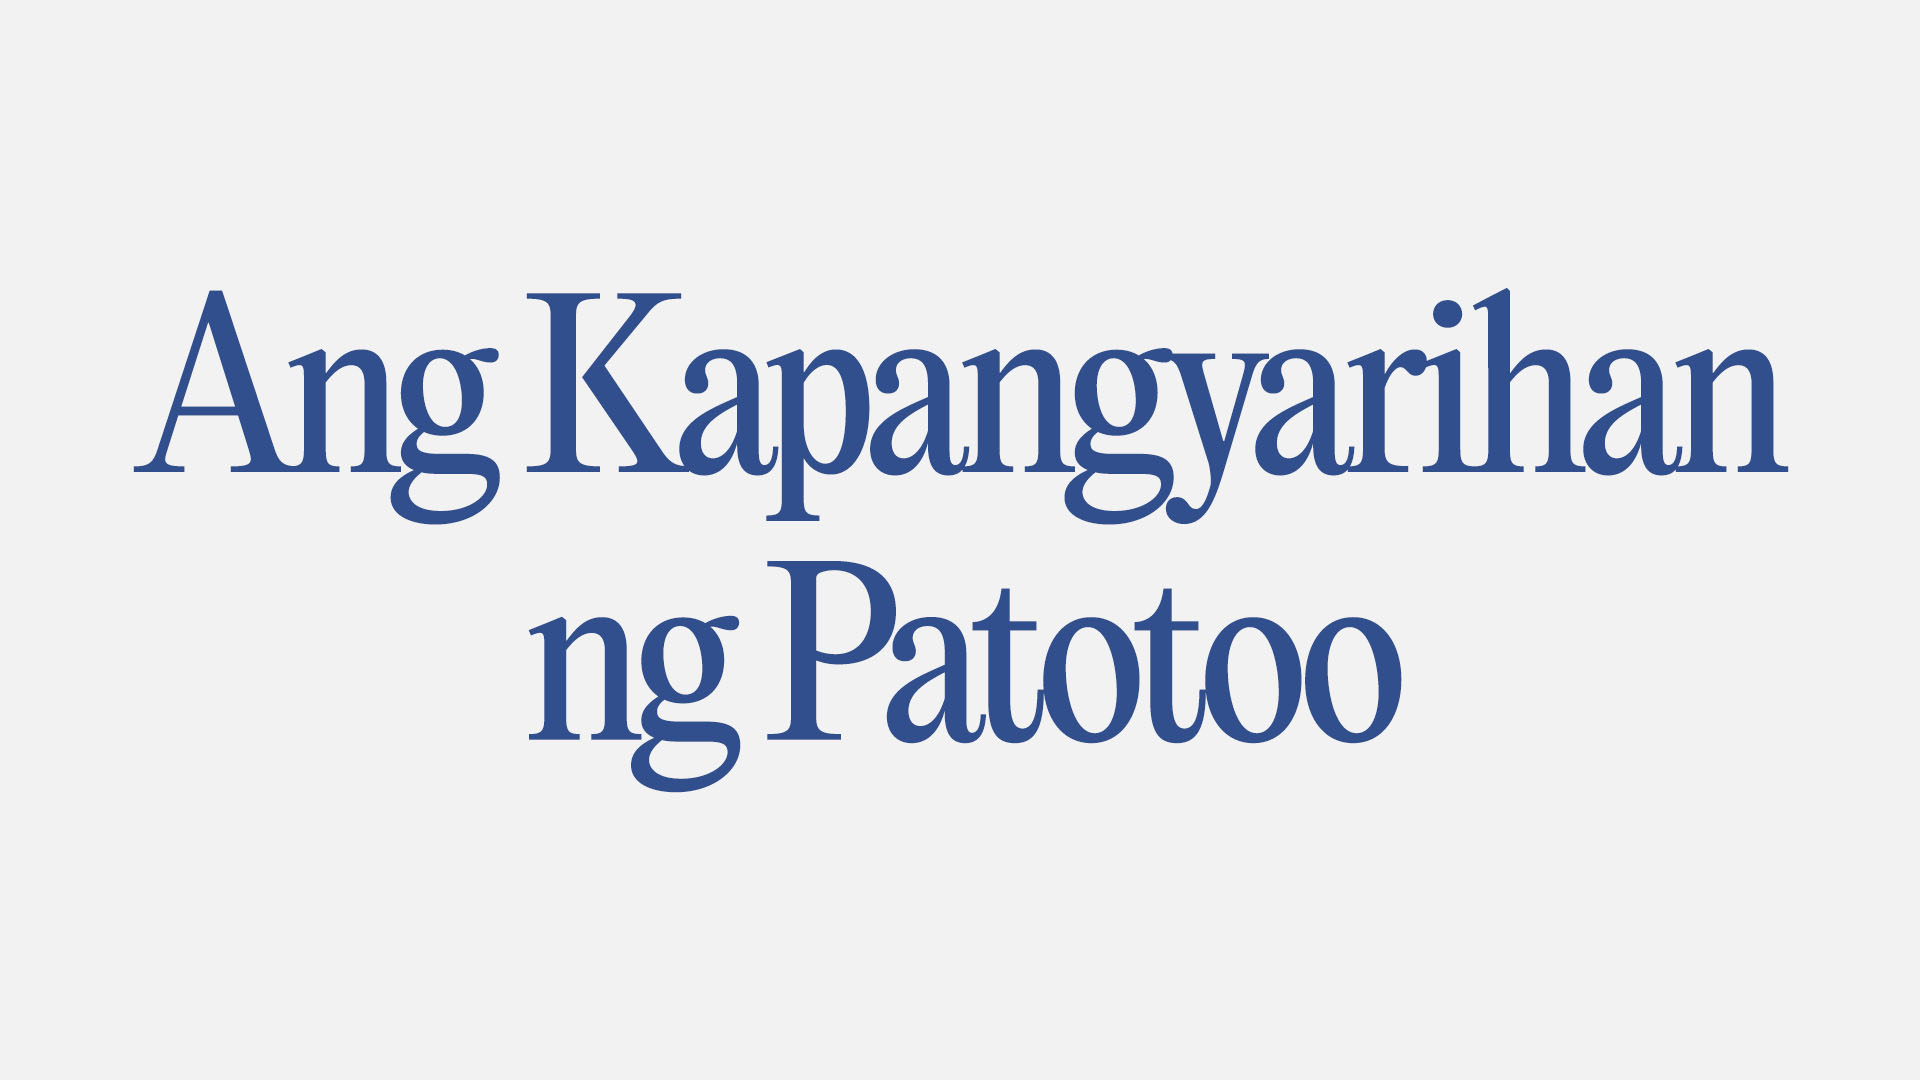 Ang Kapangyarihan ng Patotoo Image